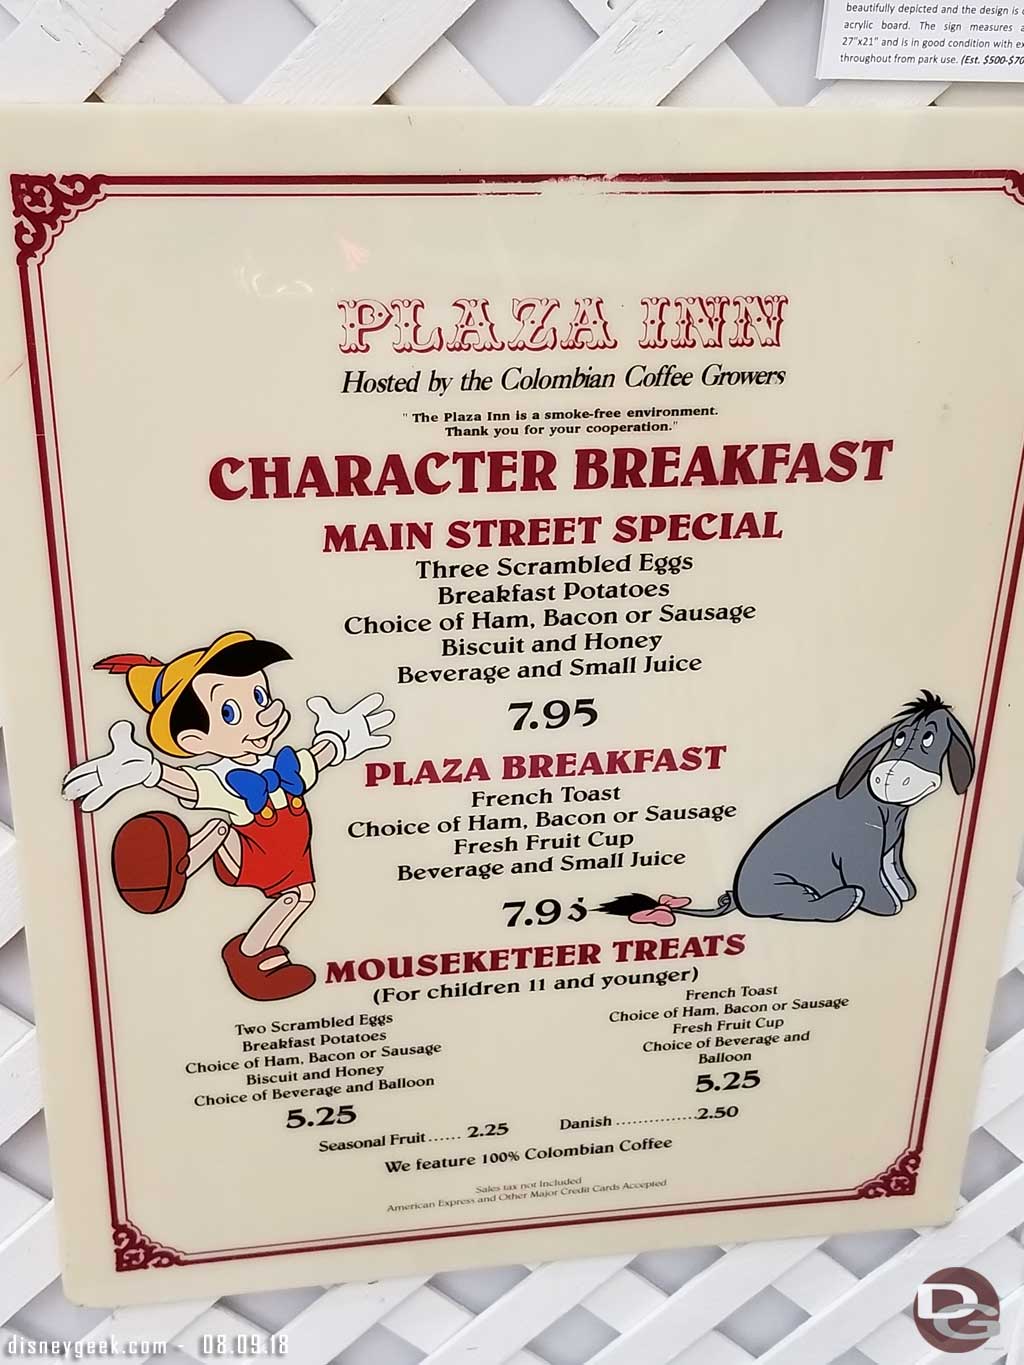 Plaza Inn Breakfast Menu (1990s-2000s)